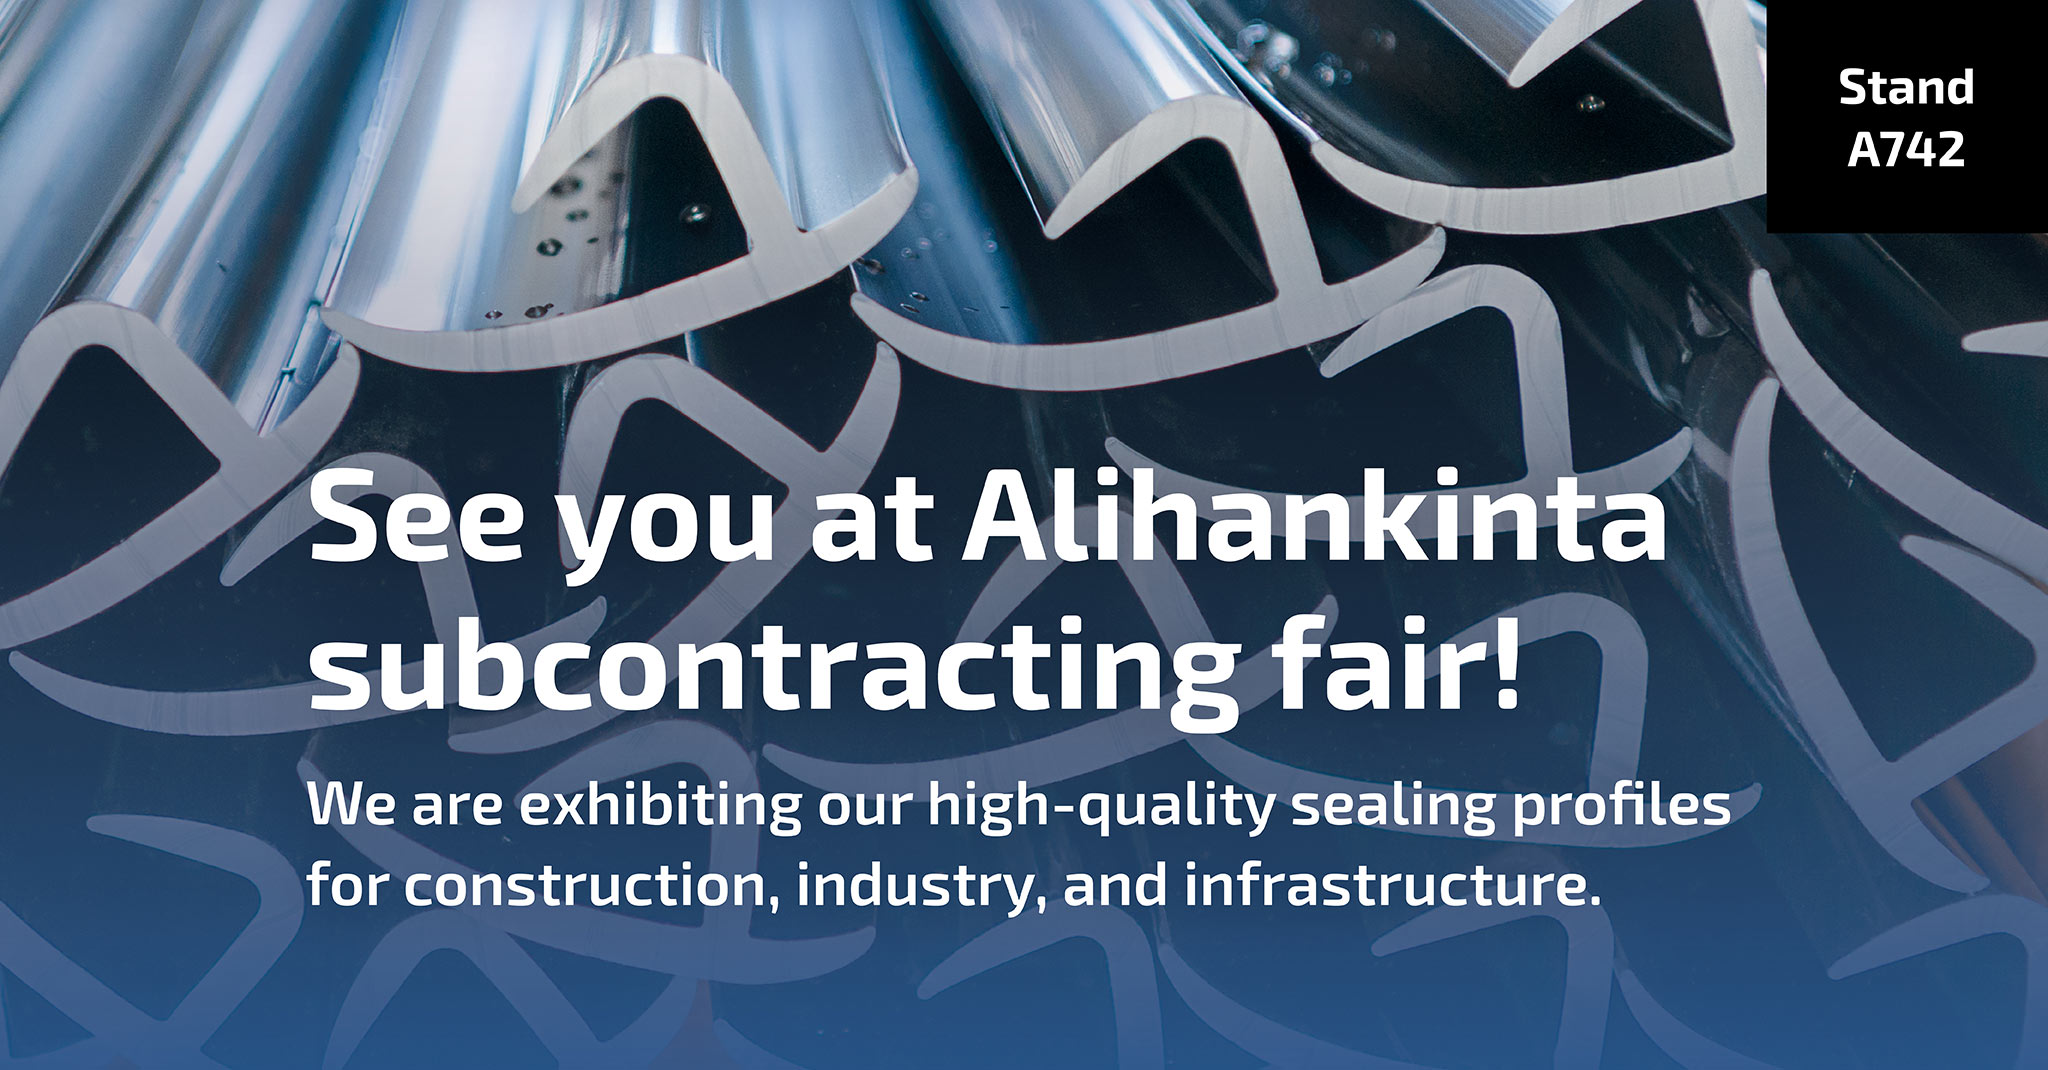 See you at Alihankinta subcontracting fair!